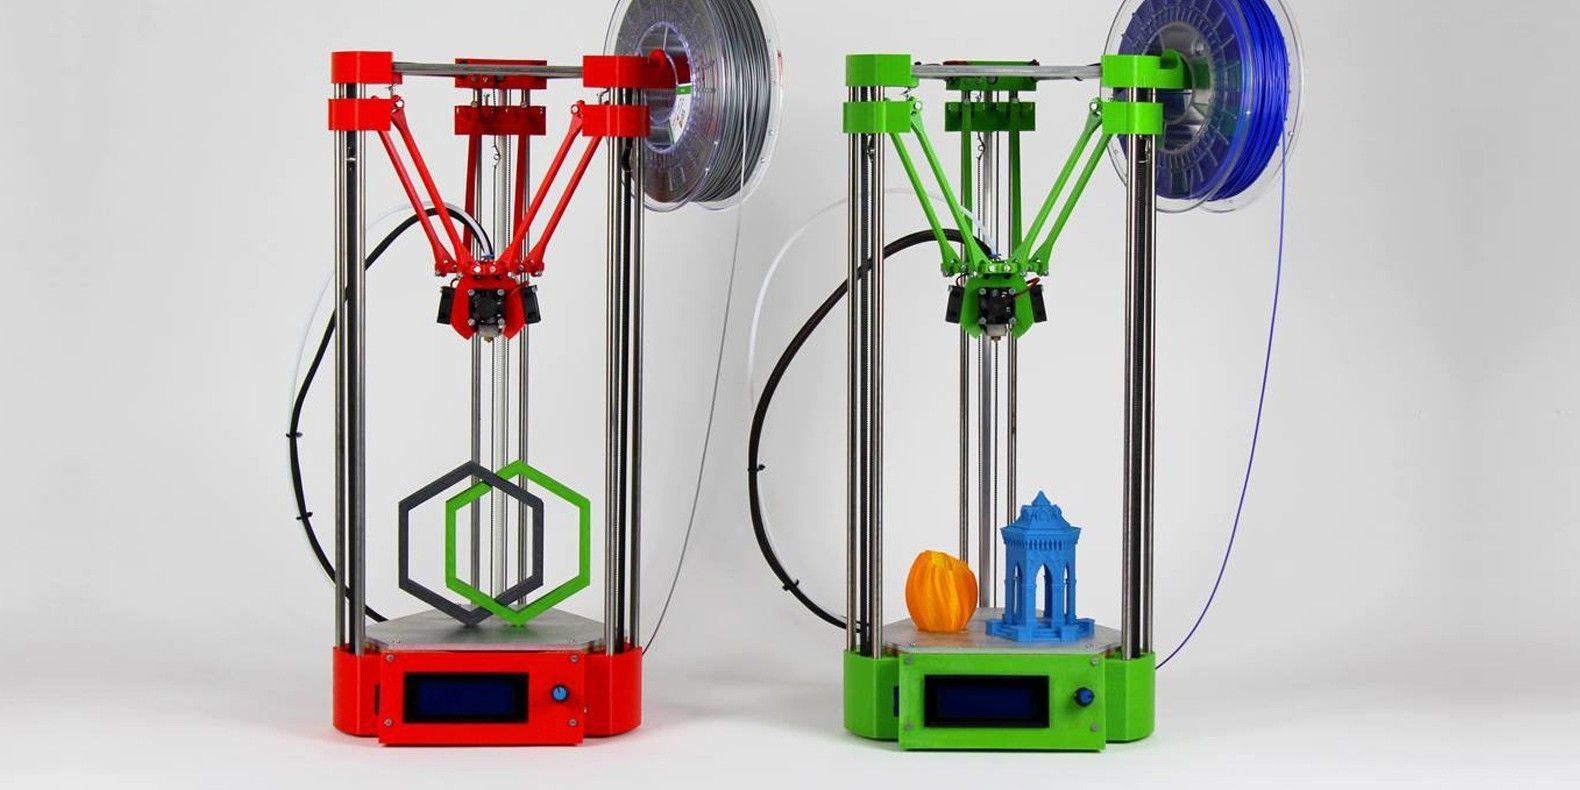 He aquí una selección de los mejores modelos 3D para imprimir su propia impresora 3D